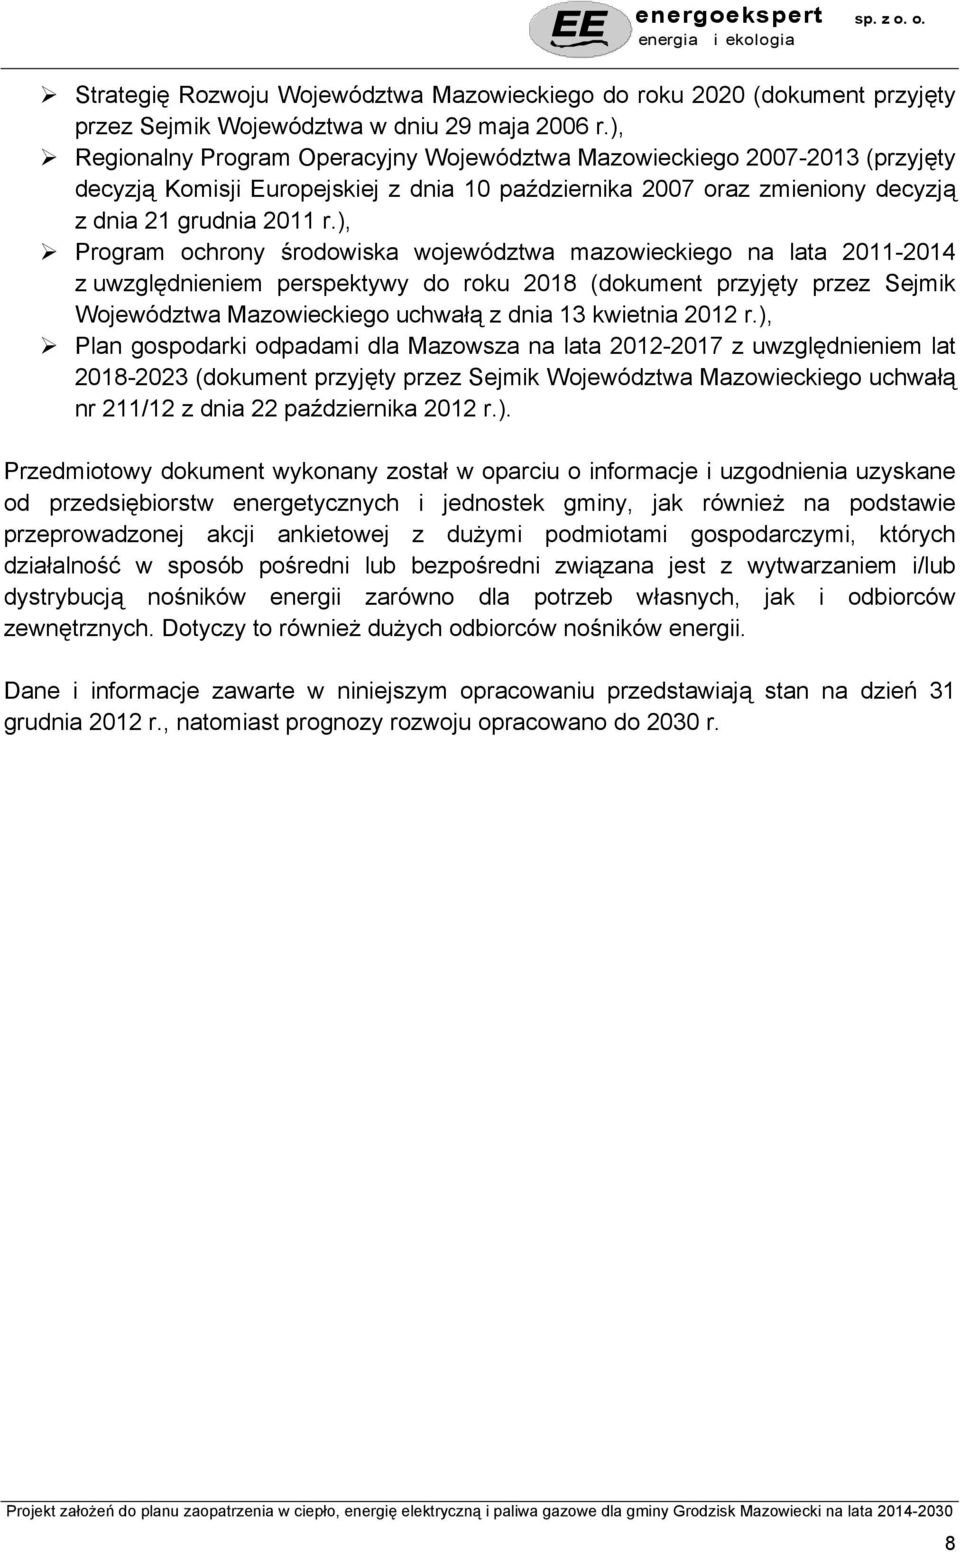 ), Program ochrony środowiska województwa mazowieckiego na lata 2011-2014 z uwzględnieniem perspektywy do roku 2018 (dokument przyjęty przez Sejmik Województwa Mazowieckiego uchwałą z dnia 13